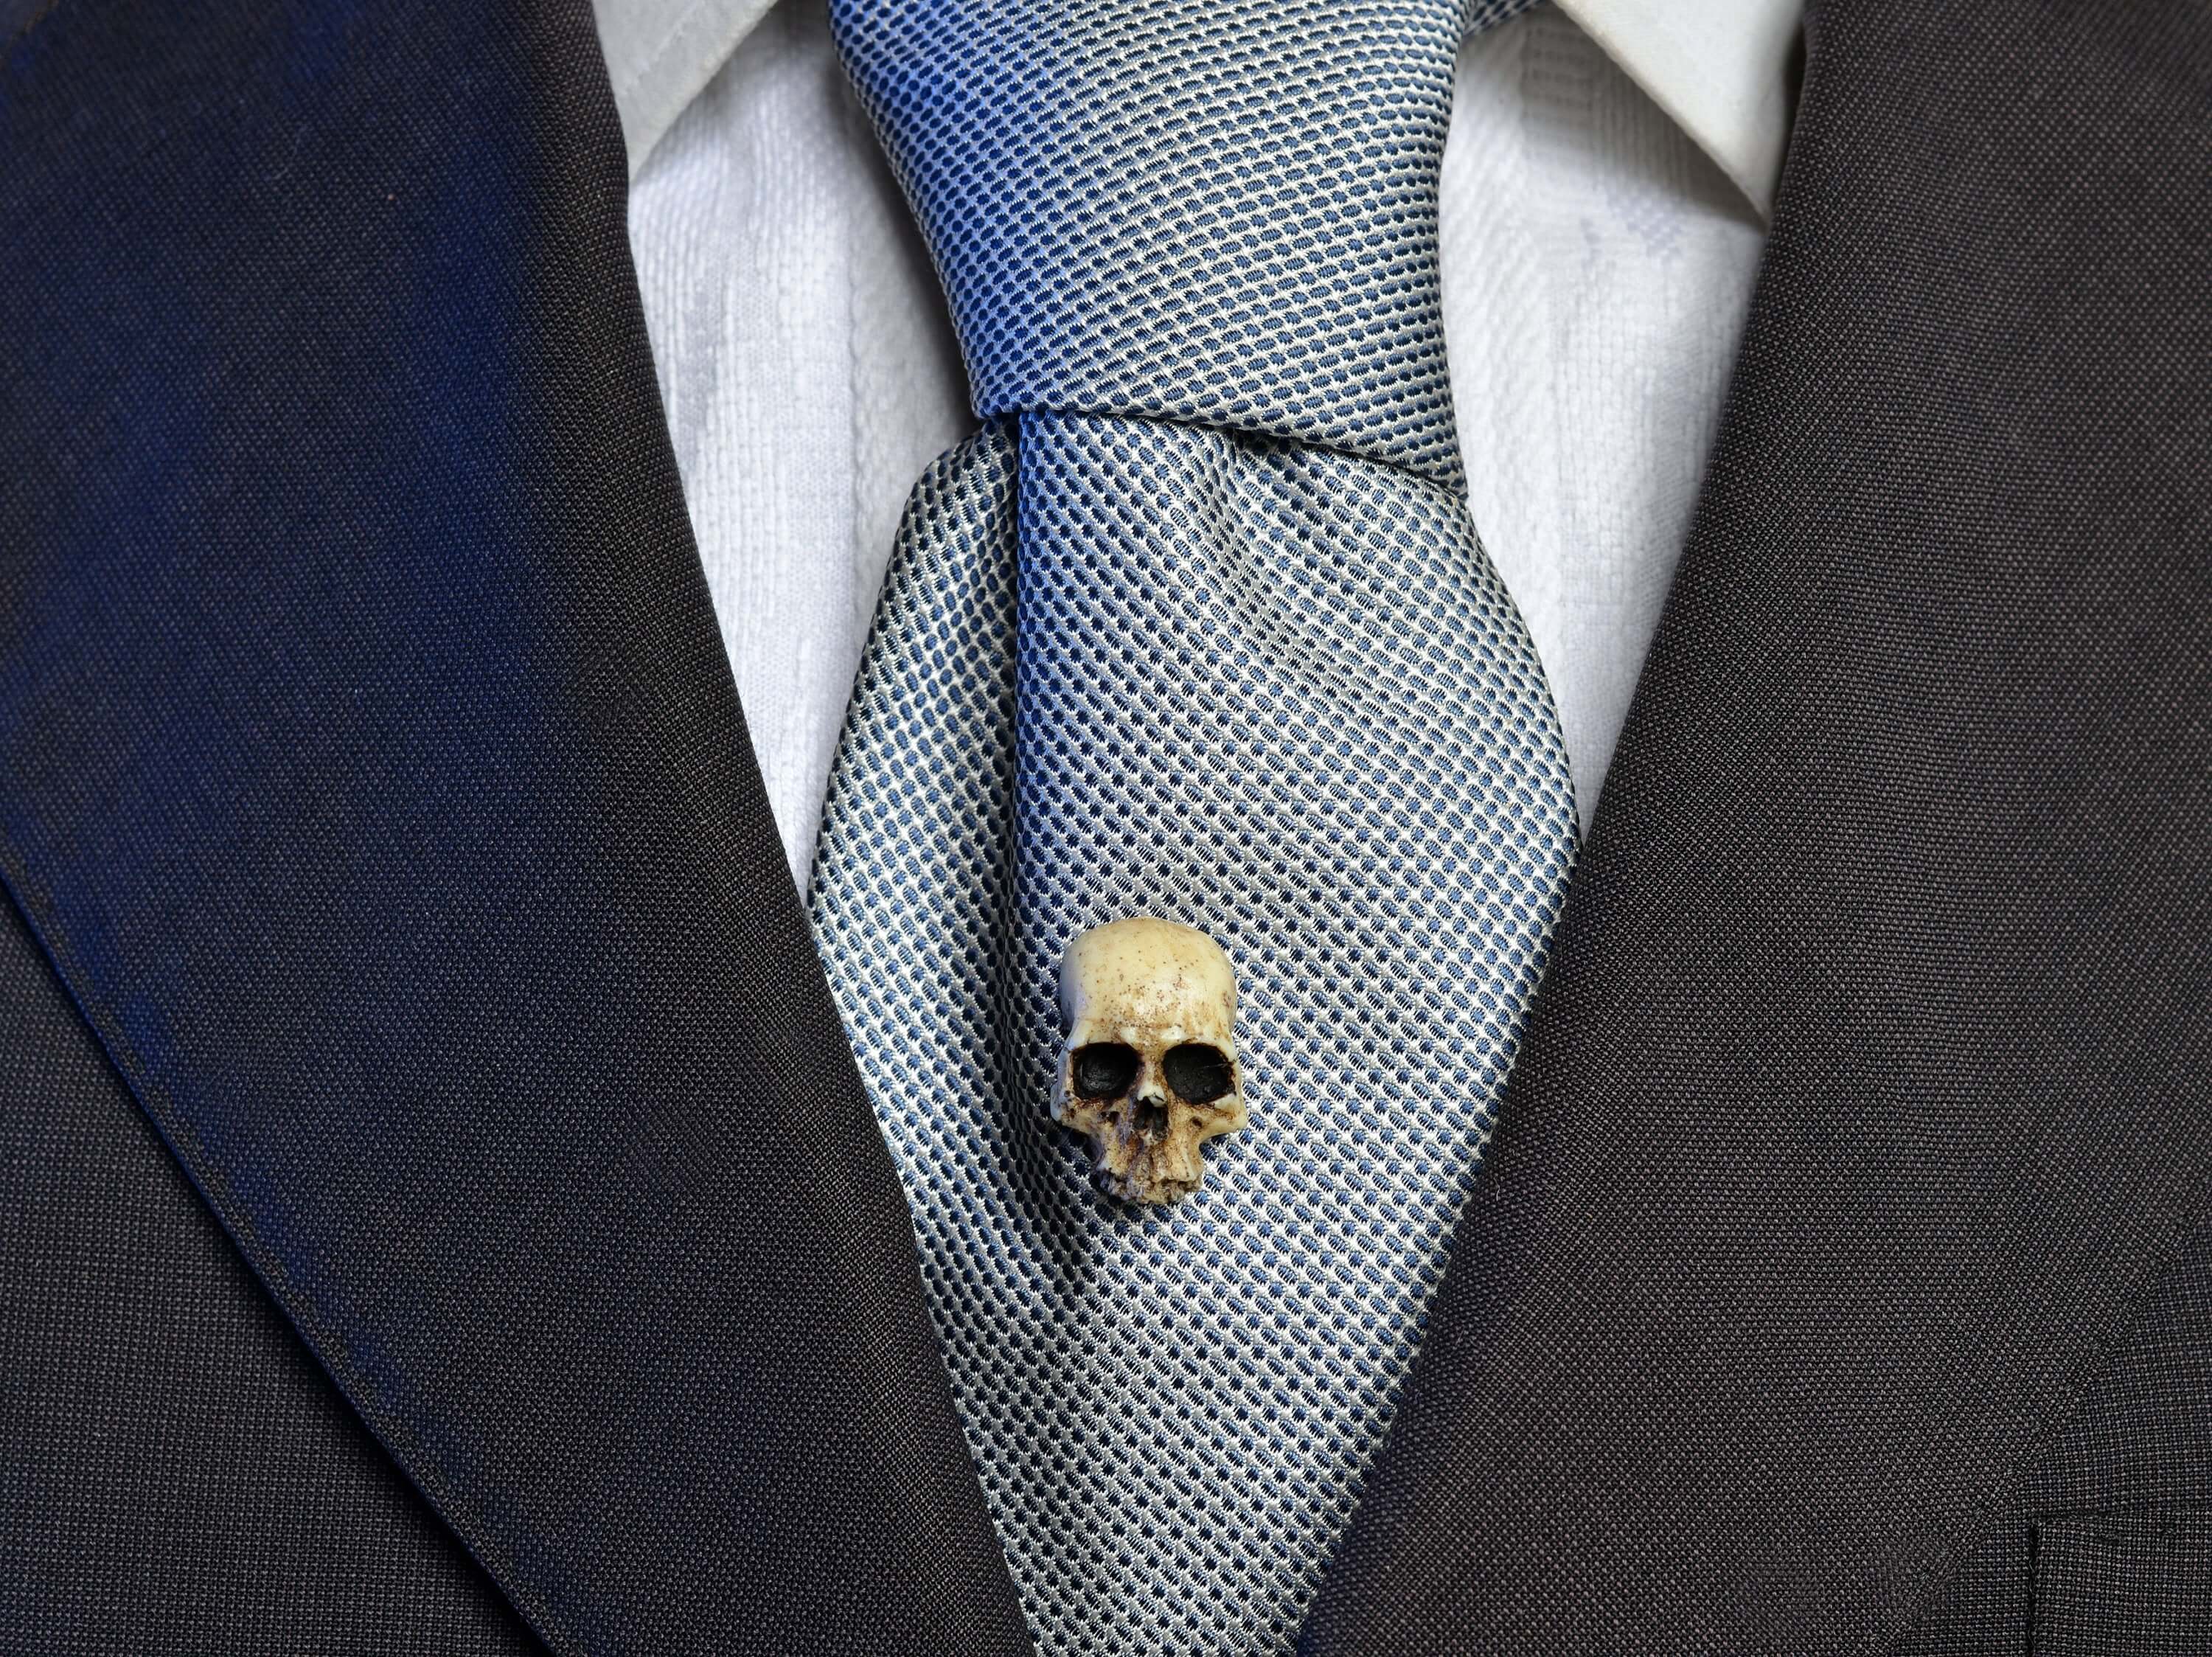 Human Skull brooch - hand made victorian replica skull tie pin - Wedding pin